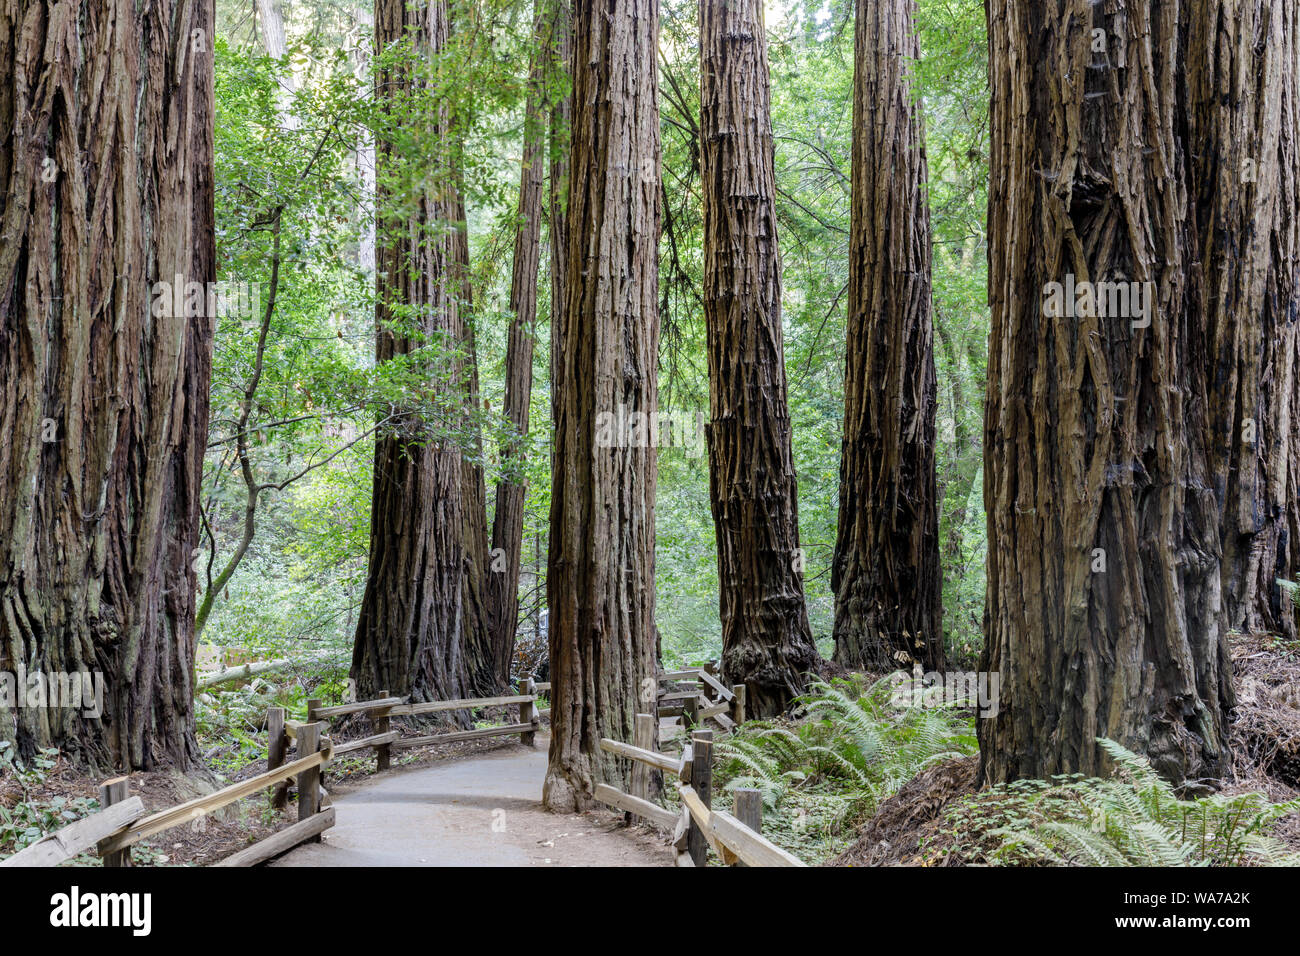 Les vieux peuplements de séquoias de la côte autour de chemin pavé Banque D'Images